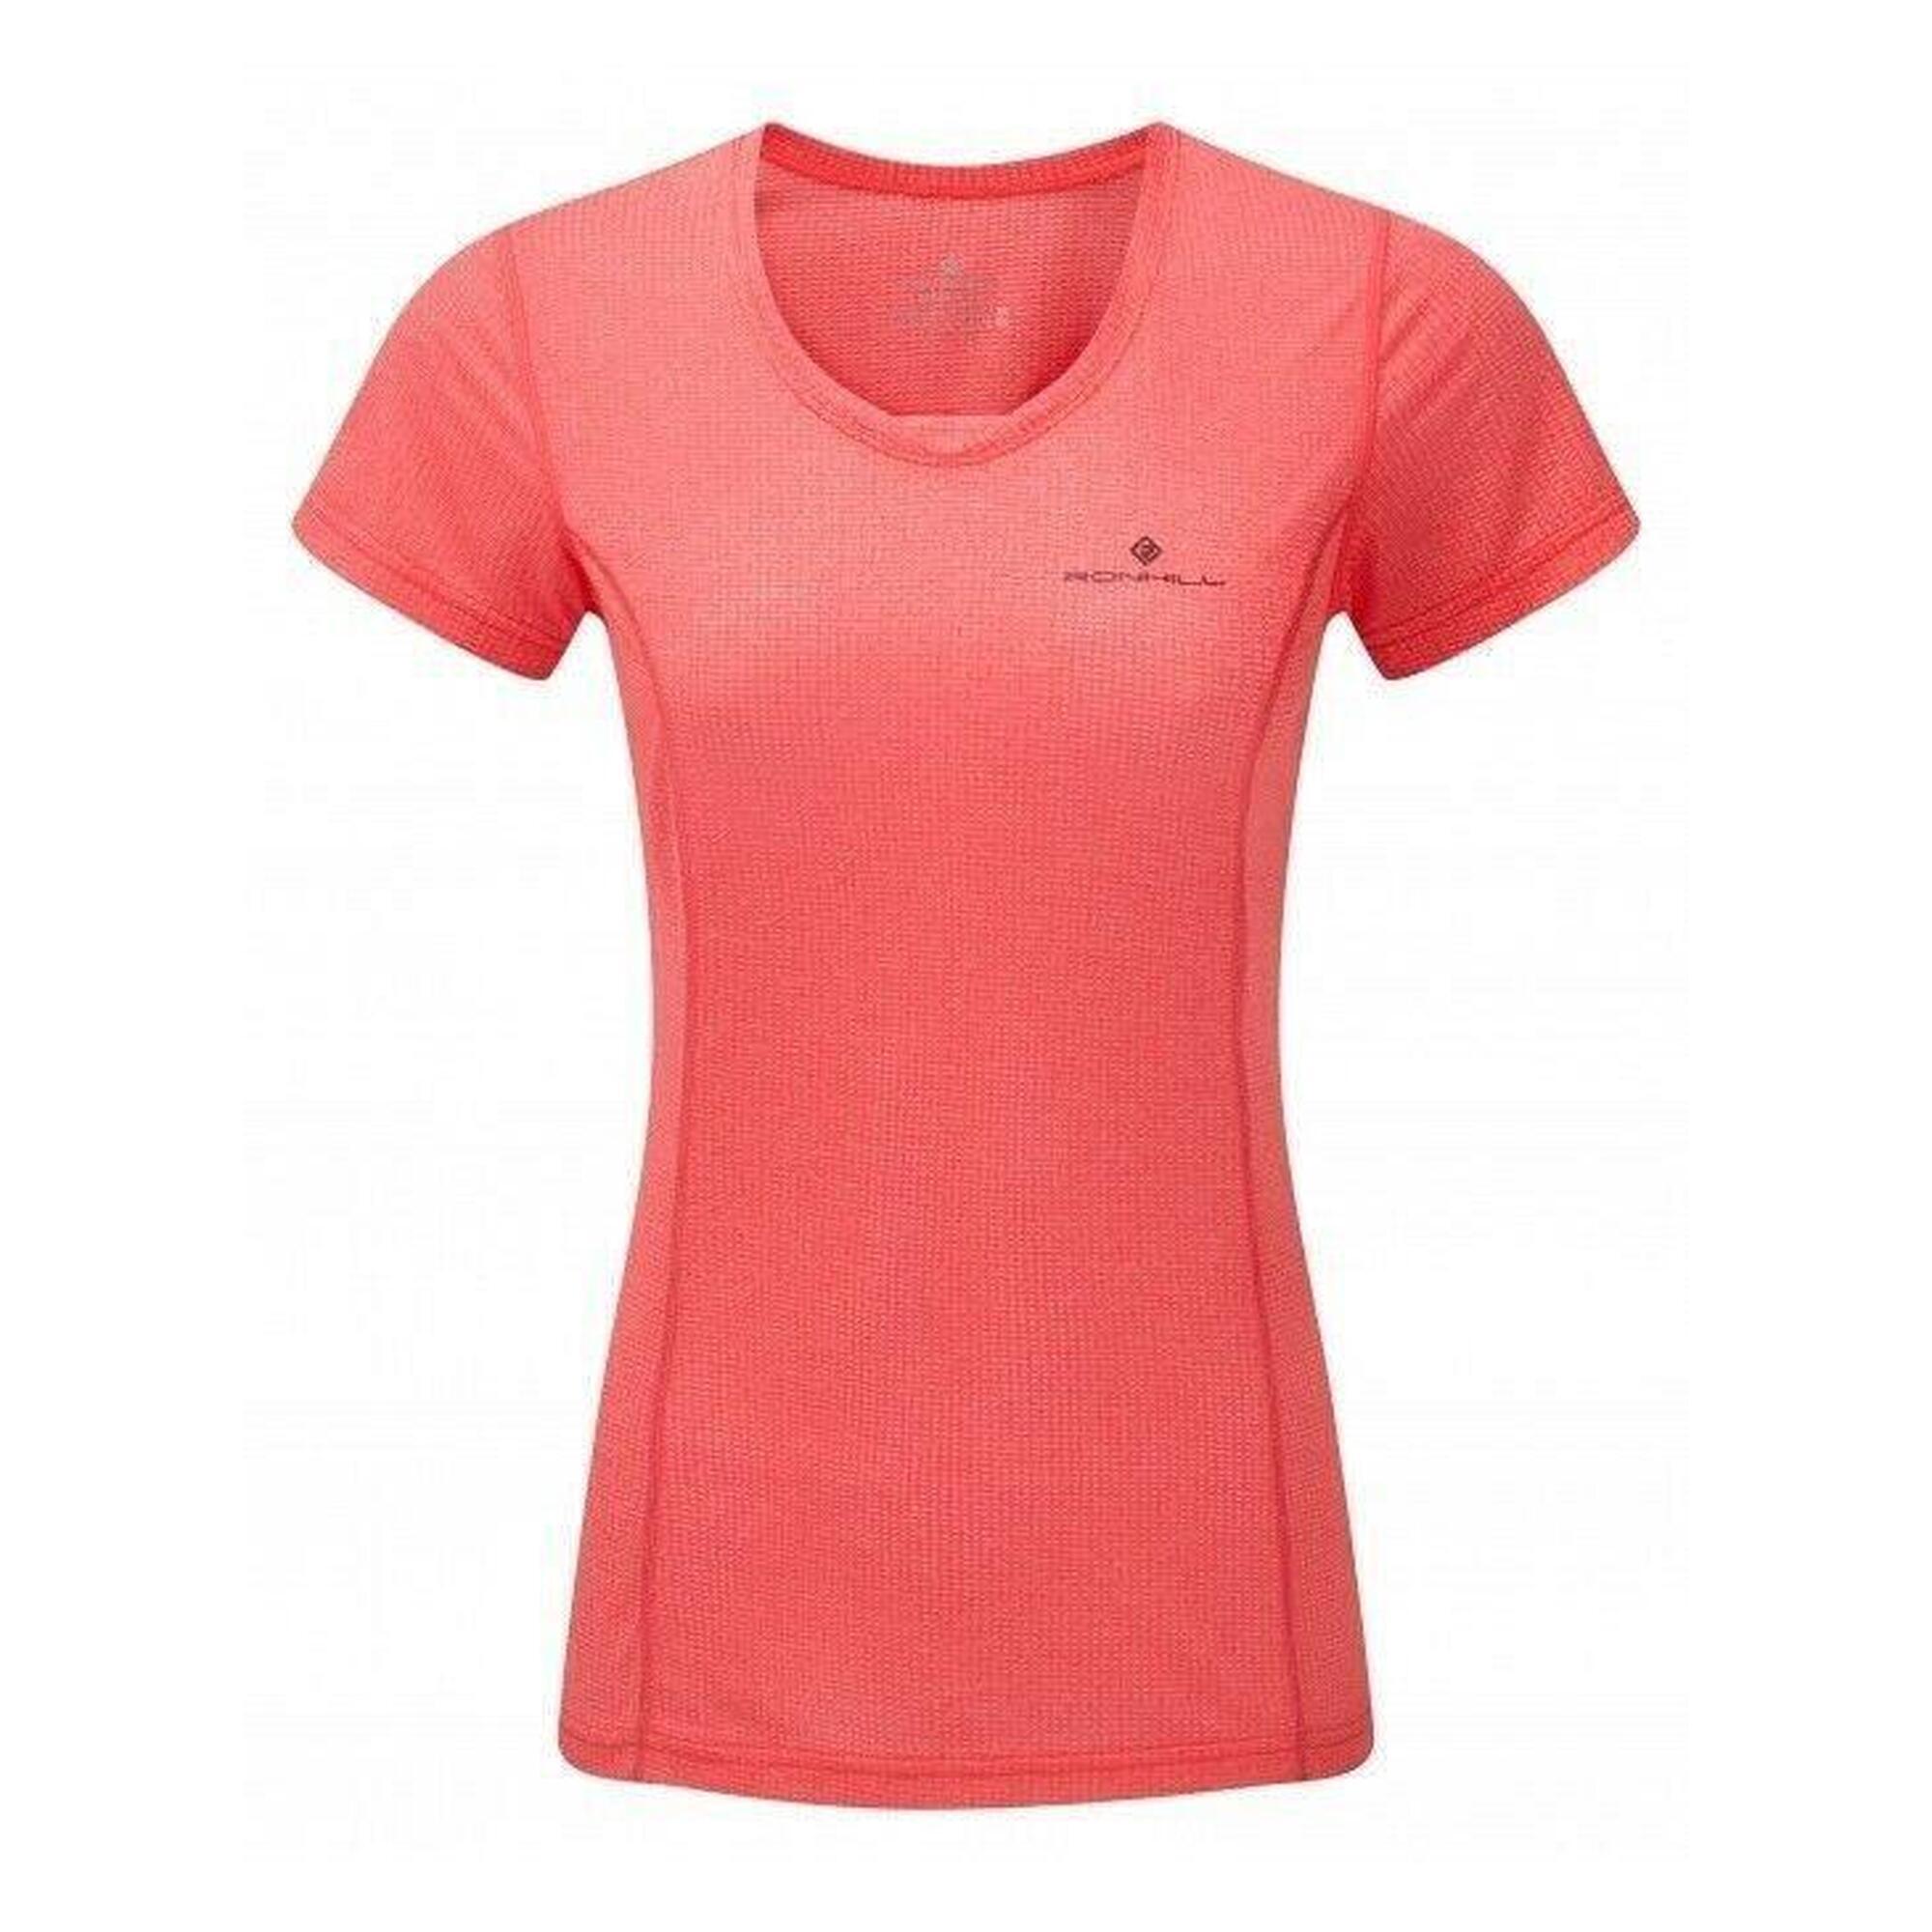 Ronhill Womens Stride Short Sleeve Running T-shirt 1/2